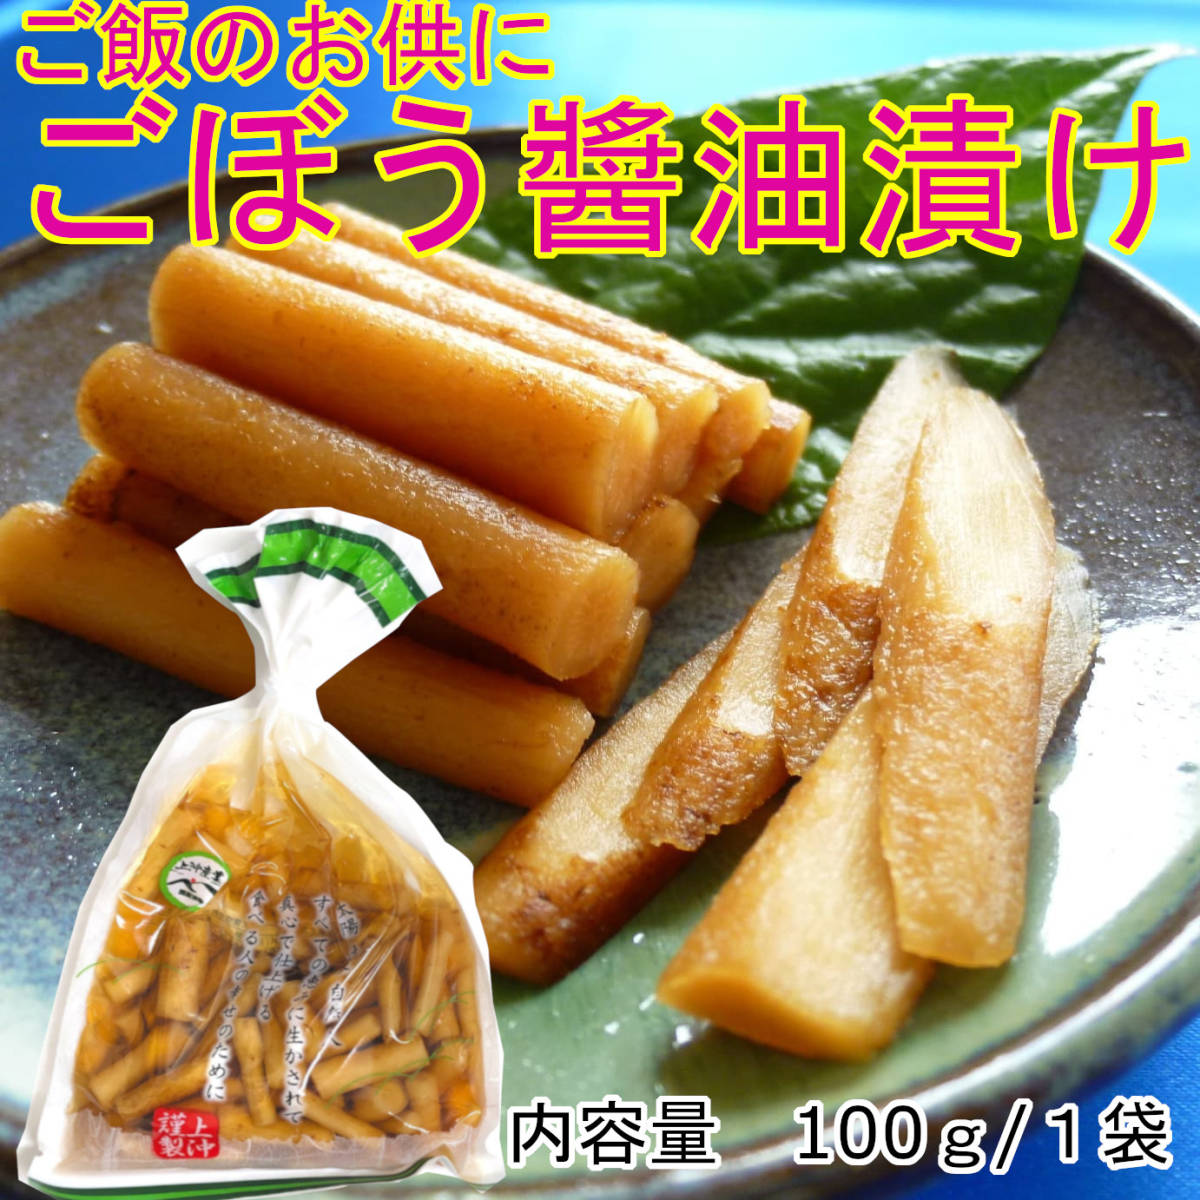  Miyazaki. tsukemono pickles gobou soy sauce .100g×3 sack cucumber soy sauce .100g×2 sack side dish rice. .. sake. . free shipping 